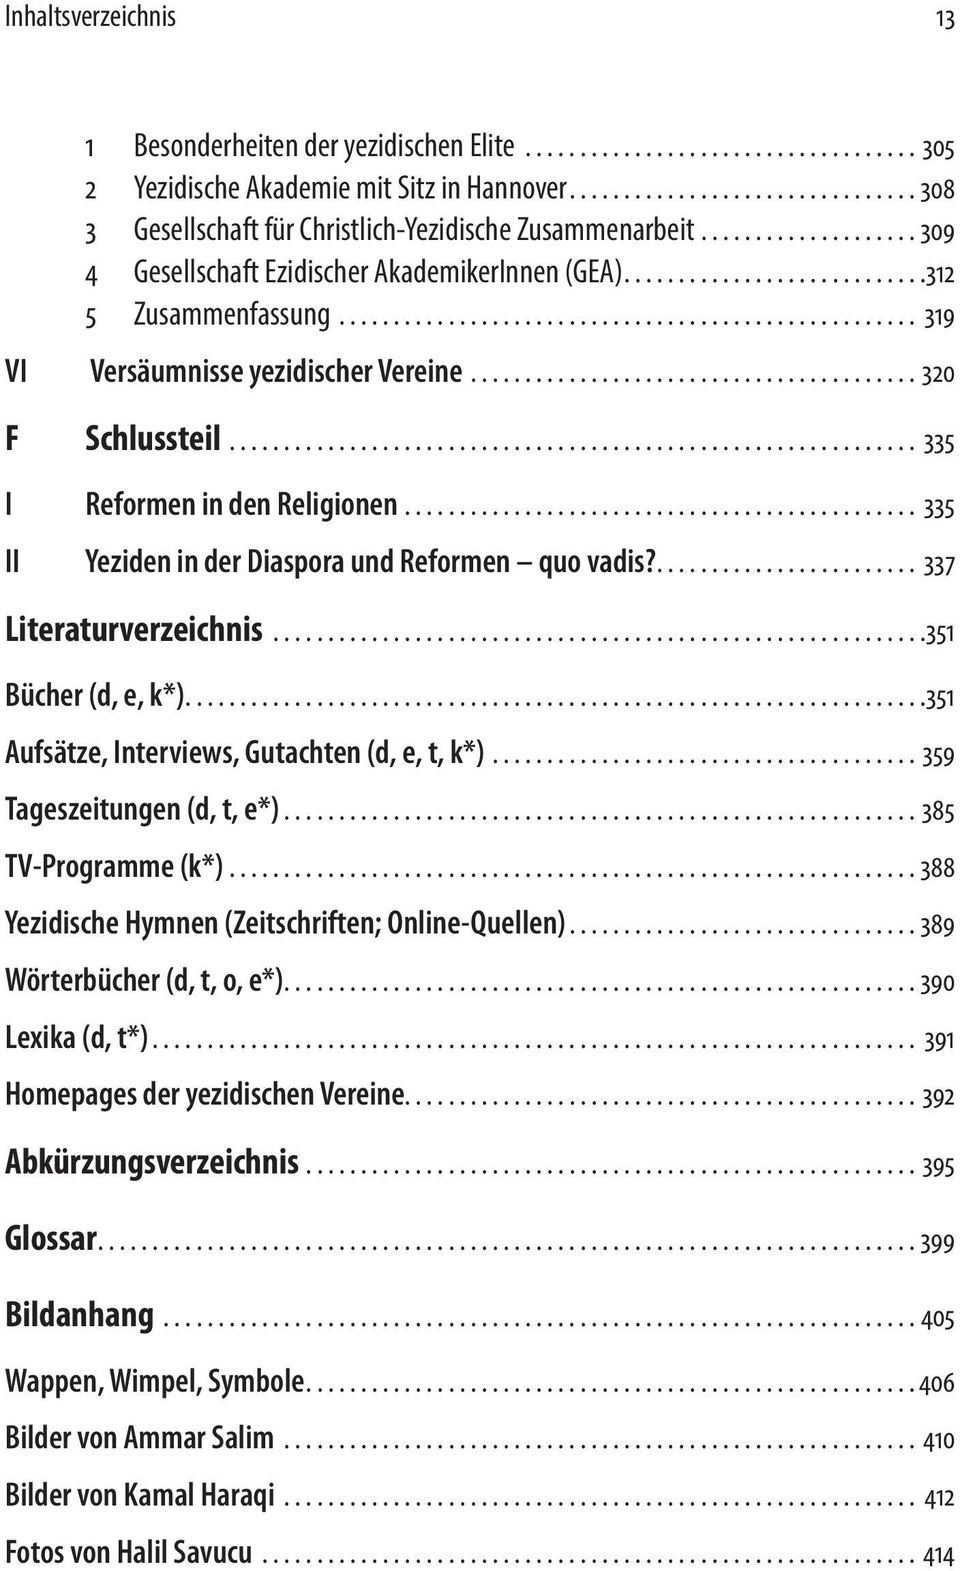 ... 335 II Yeziden in der Diaspora und Reformen quo vadis?... 337 Literaturverzeichnis... 351 Bücher (d, e, k*).... 351 Aufsätze, Interviews, Gutachten (d, e, t, k*)...359 Tageszeitungen (d, t, e*).